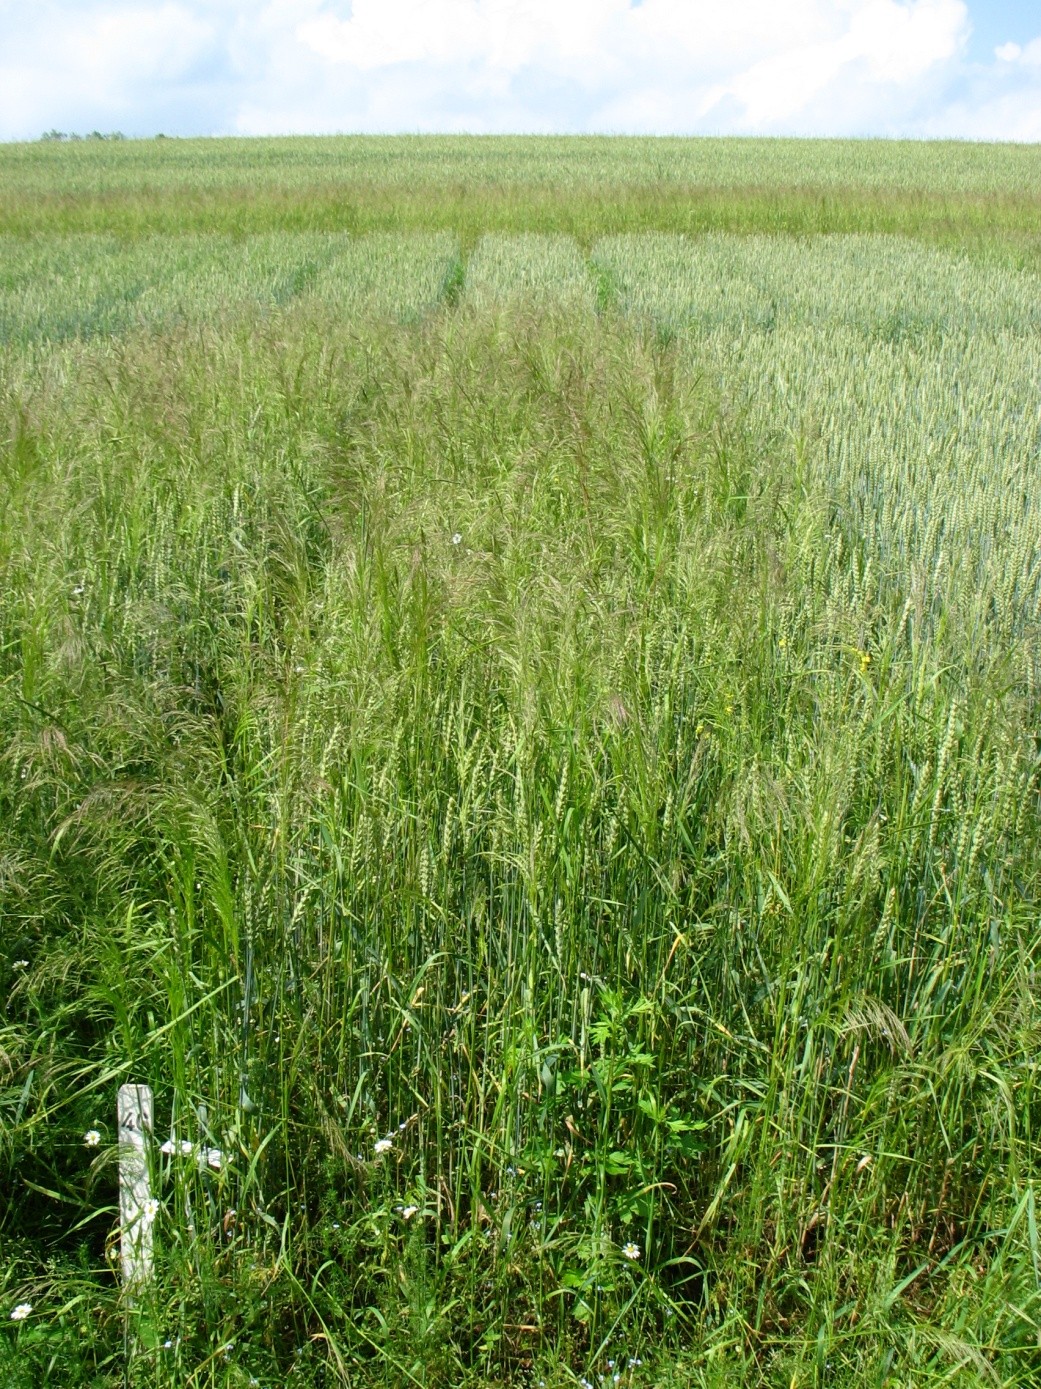 3.ábra. A termésméréshez kapcsolódó nagy széltippa fertőzés (Krasne Udoli, Csehország, 2009. Foto: V.